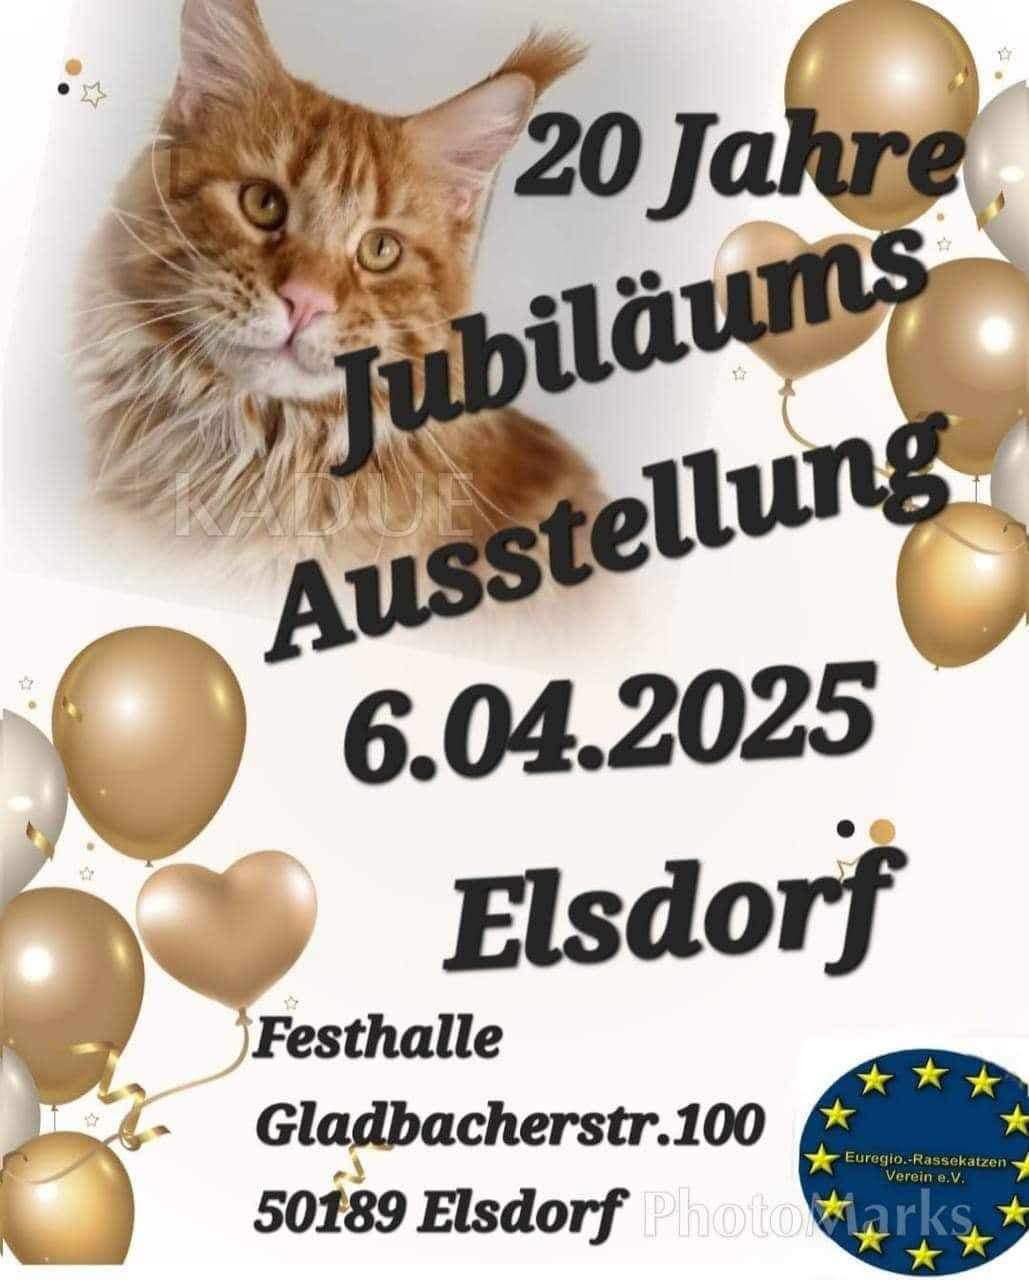 20 Jahre Jubiläumsausstellung in Elsdorf